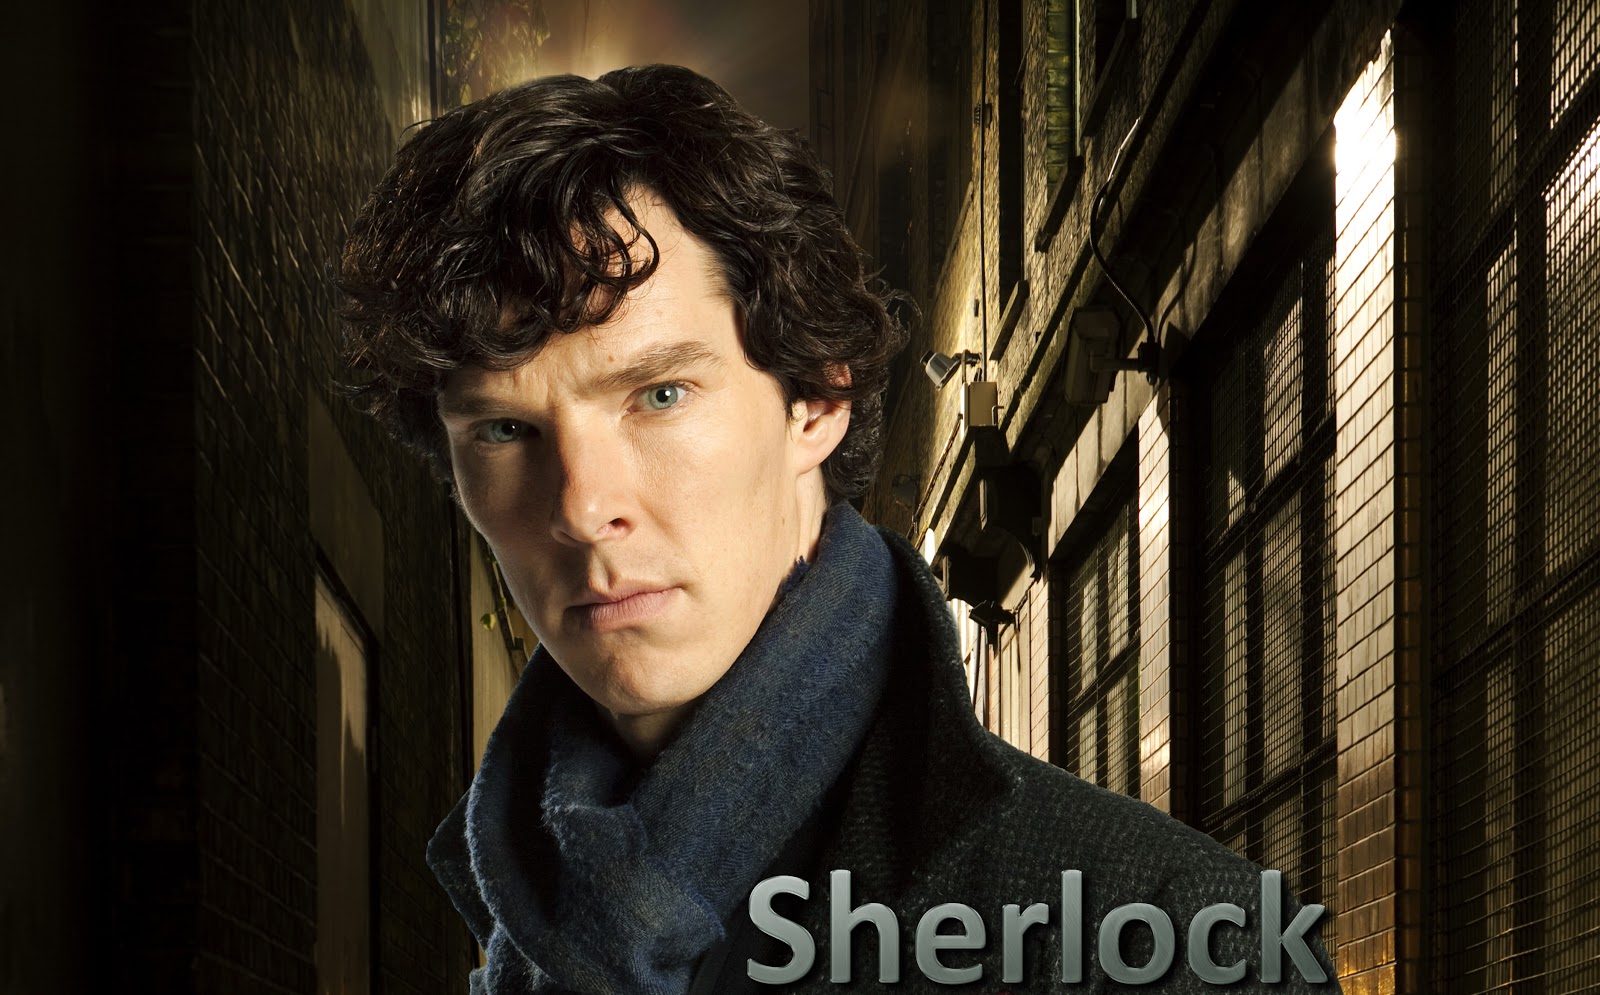 50+] Benedict Cumberbatch Sherlock Wallpaper - WallpaperSafari